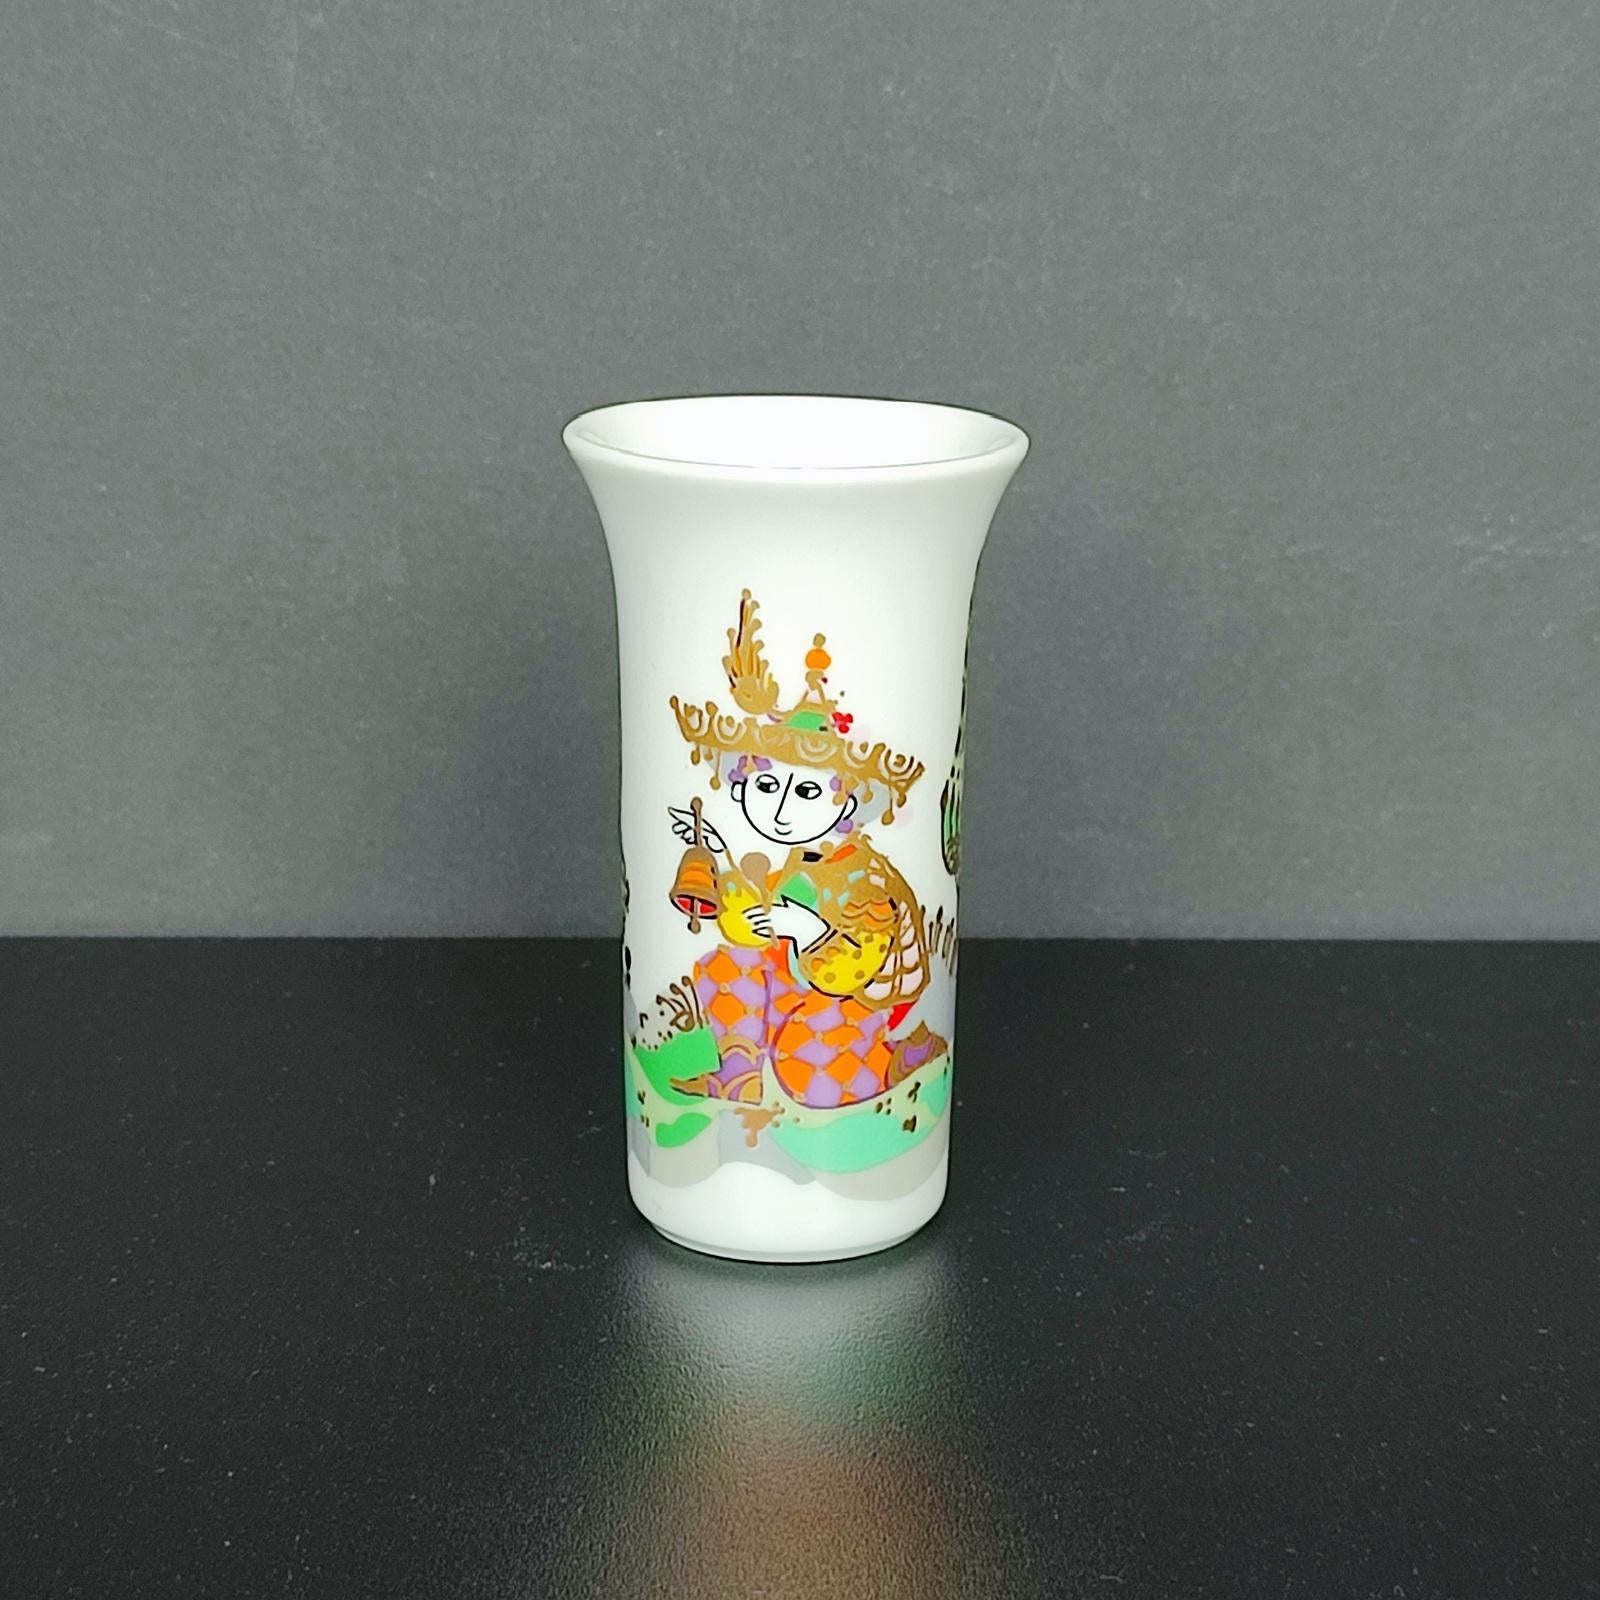 Vase 'Arundo' de Rosenthal Studio-linie par Bjorn Wiinblad, Allemagne 1986 - Porcelaine allemande.
Signé Björn Winblad sur le mur, marque du fabricant sur le fond.
Un joli petit vase d'une qualité exceptionnelle !
Hauteur 8.8 cm